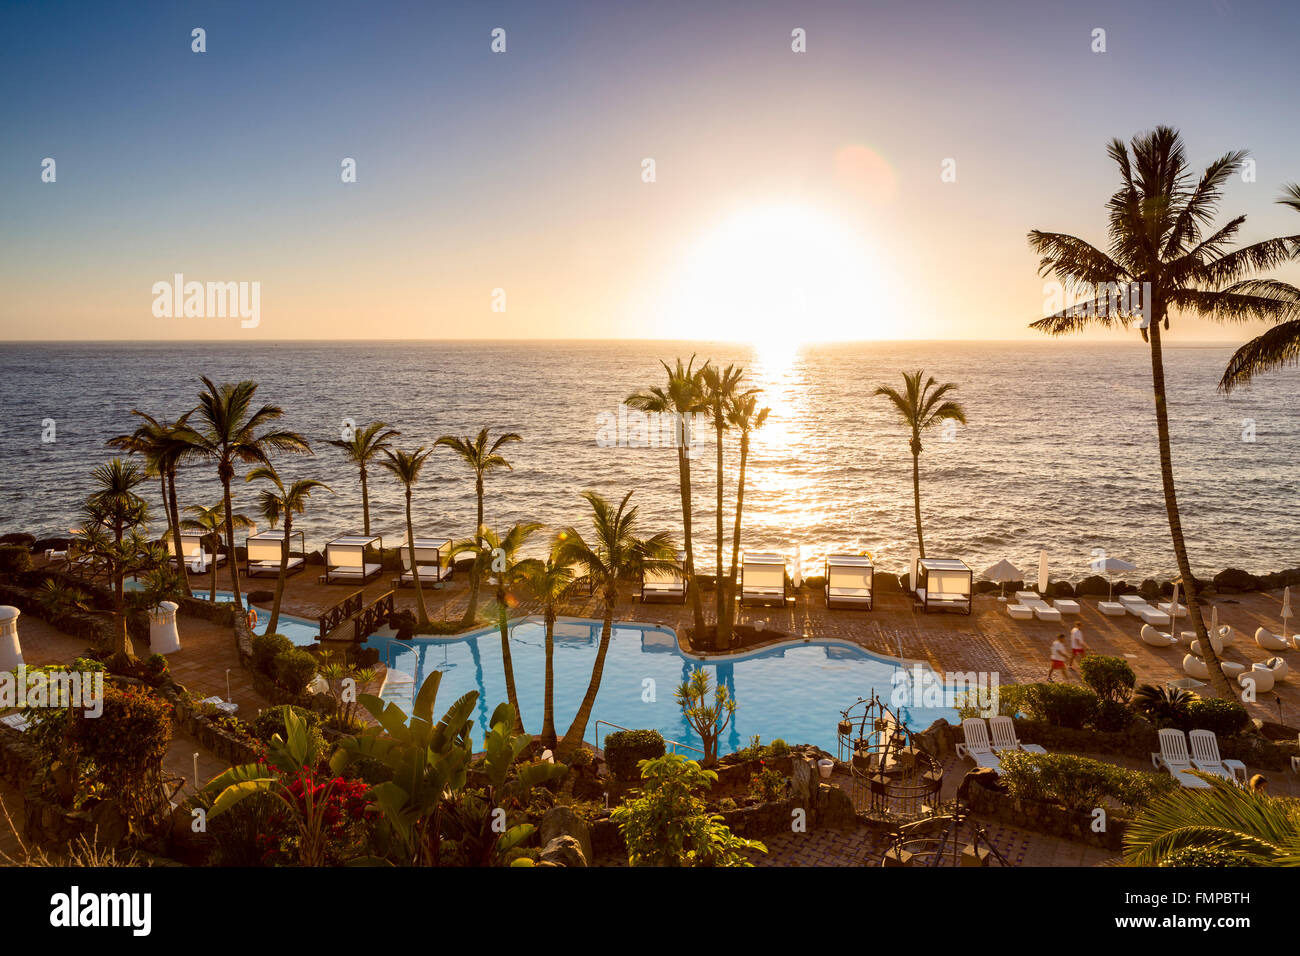 Une piscine au bord de mer avec des palmiers au coucher du soleil, Costa Adeje, Tenerife, Canaries, Espagne Banque D'Images